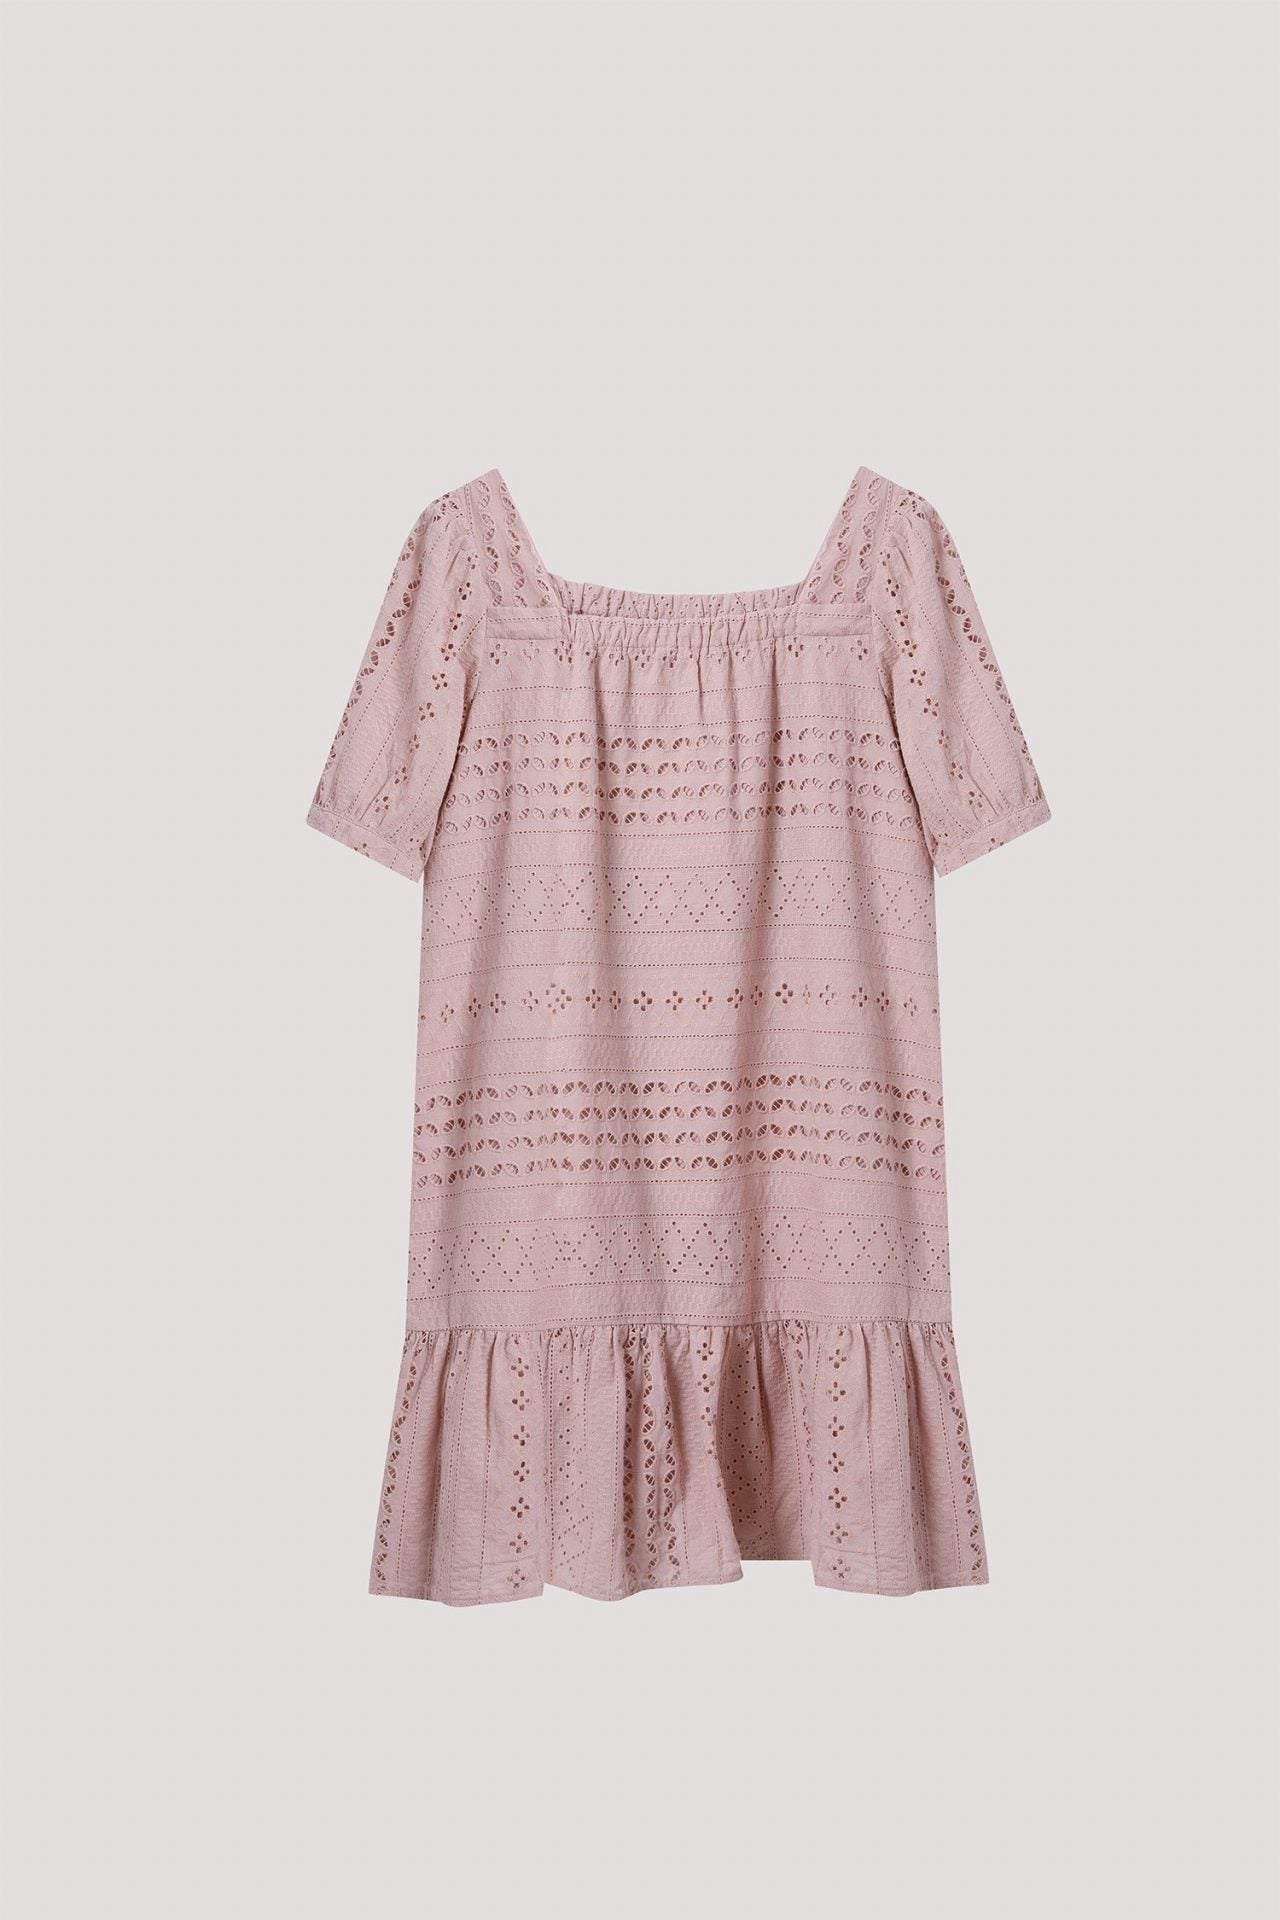 bdq 9060 layered dress blush